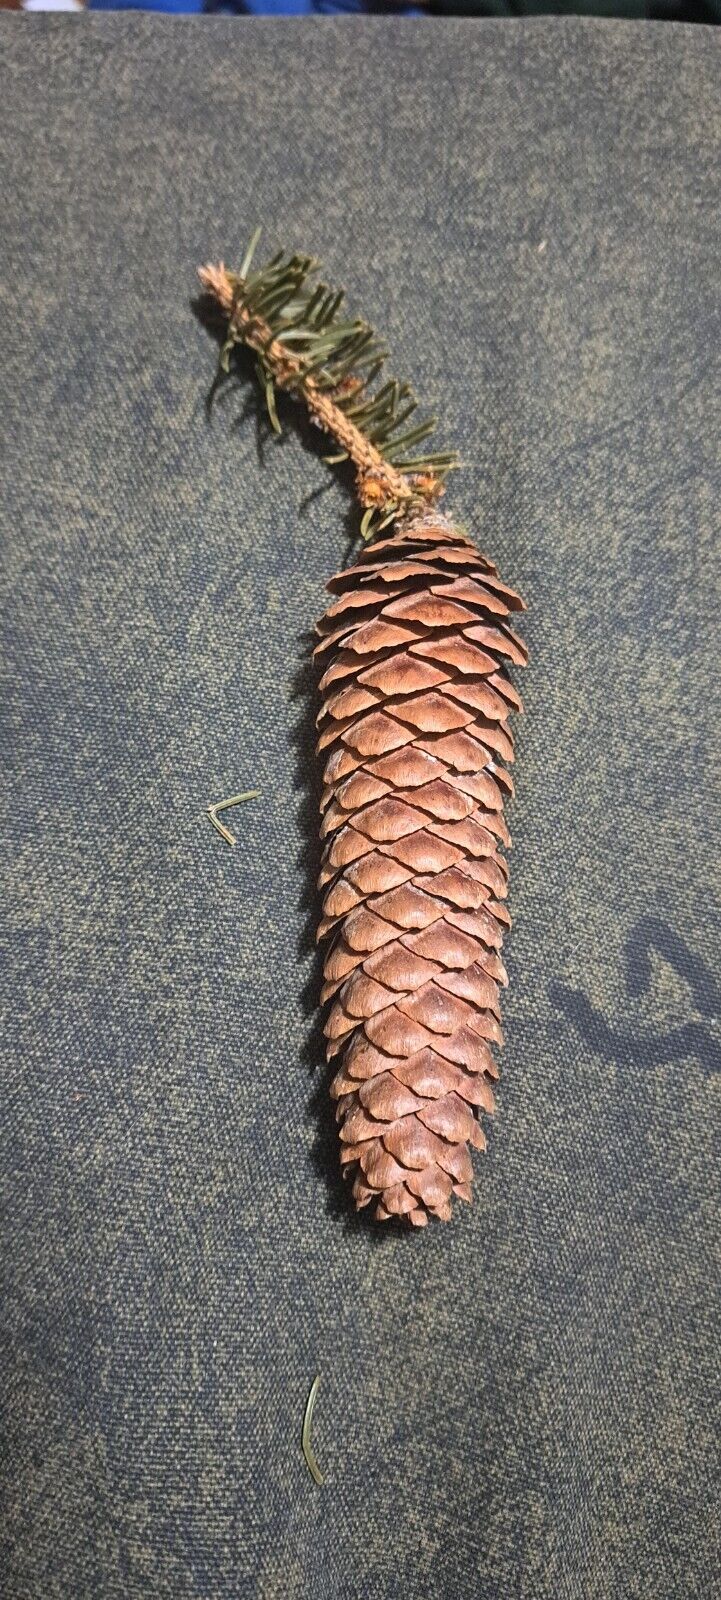 Pine Cone Shaped Like A Carrot